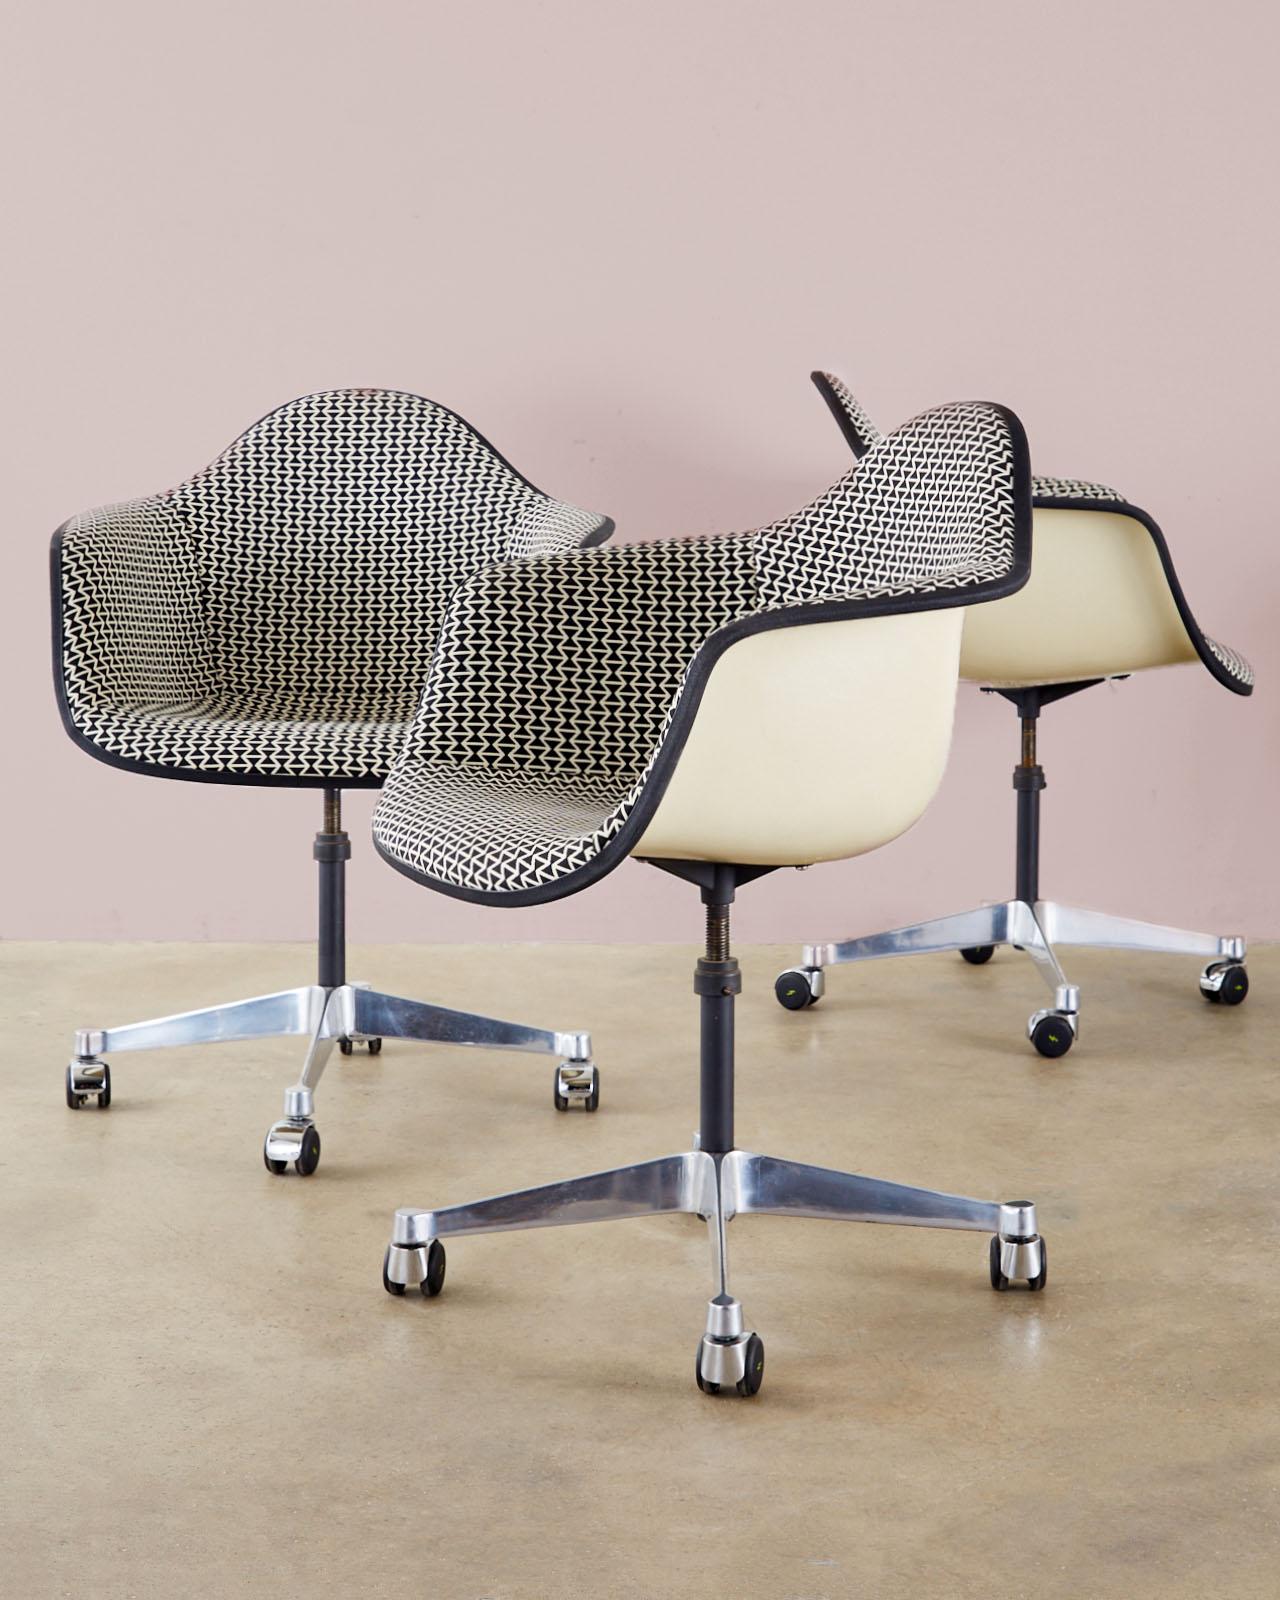 Éblouissant ensemble de quatre chaises pivotantes rembourrées de Charles et Ray Eames pour Herman Miller, datant du milieu du siècle dernier. Les coques en fibre de verre sont tapissées d'un rare imprimé géométrique noir et blanc avec une bordure